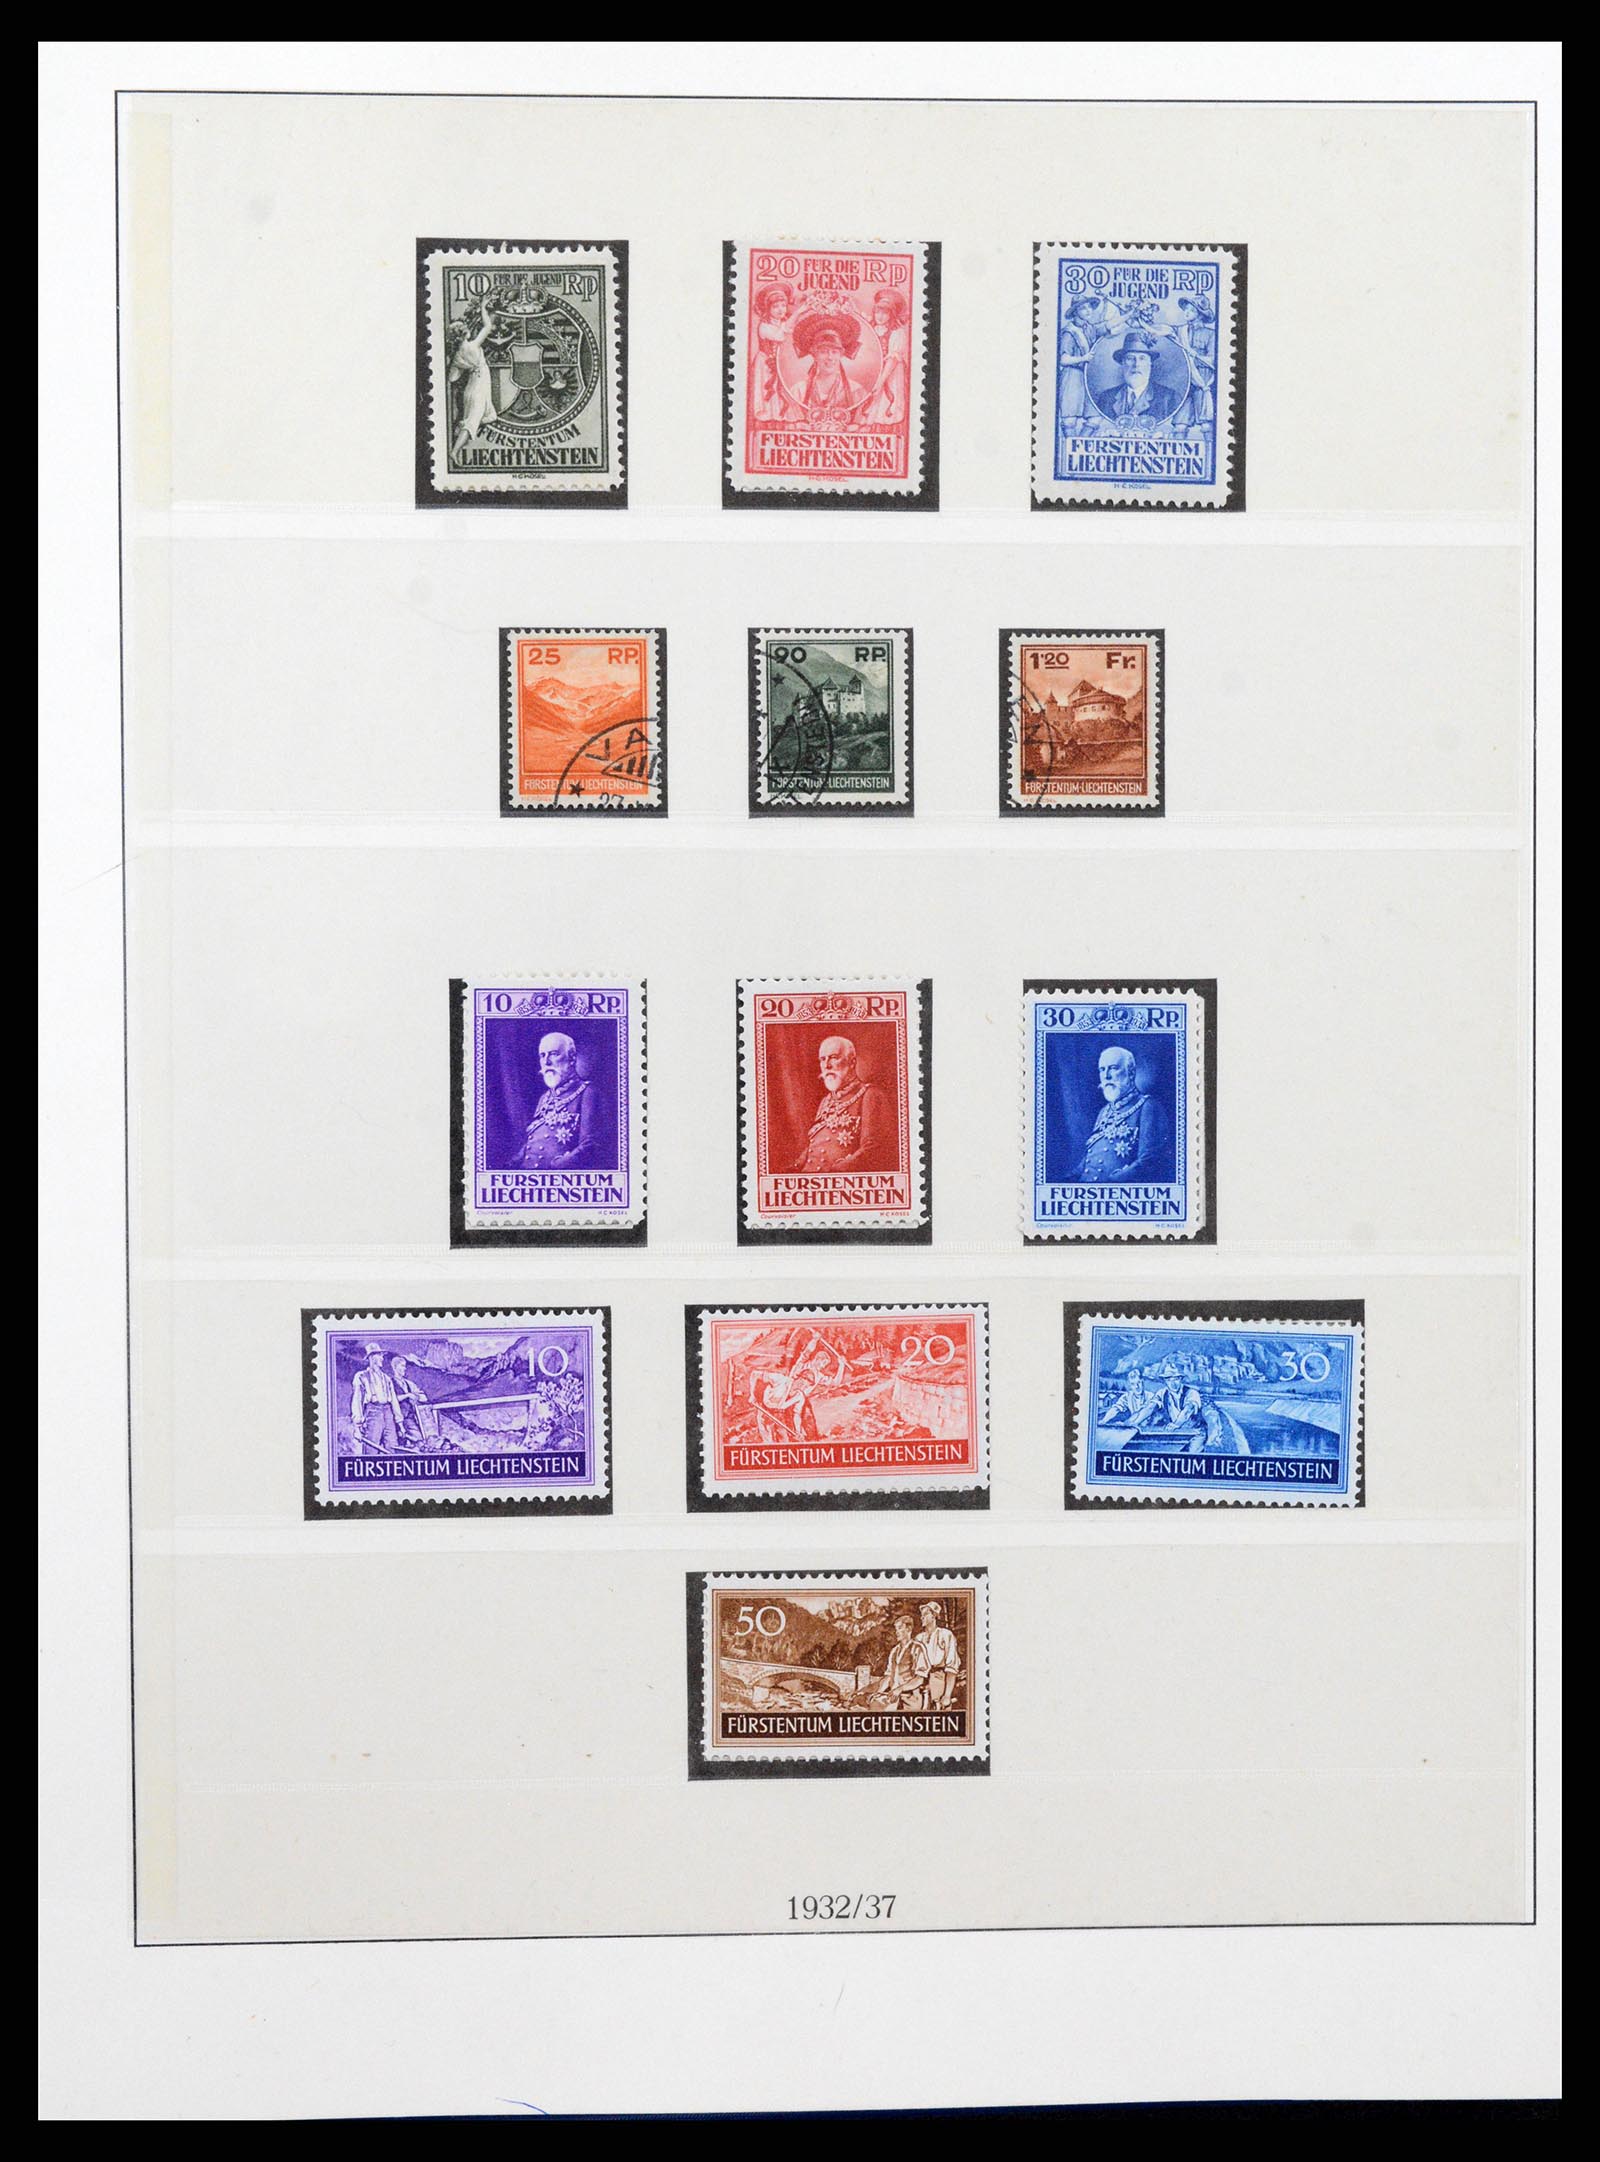 37295 010 - Stamp collection 37295 Liechtenstein 1912-2009.